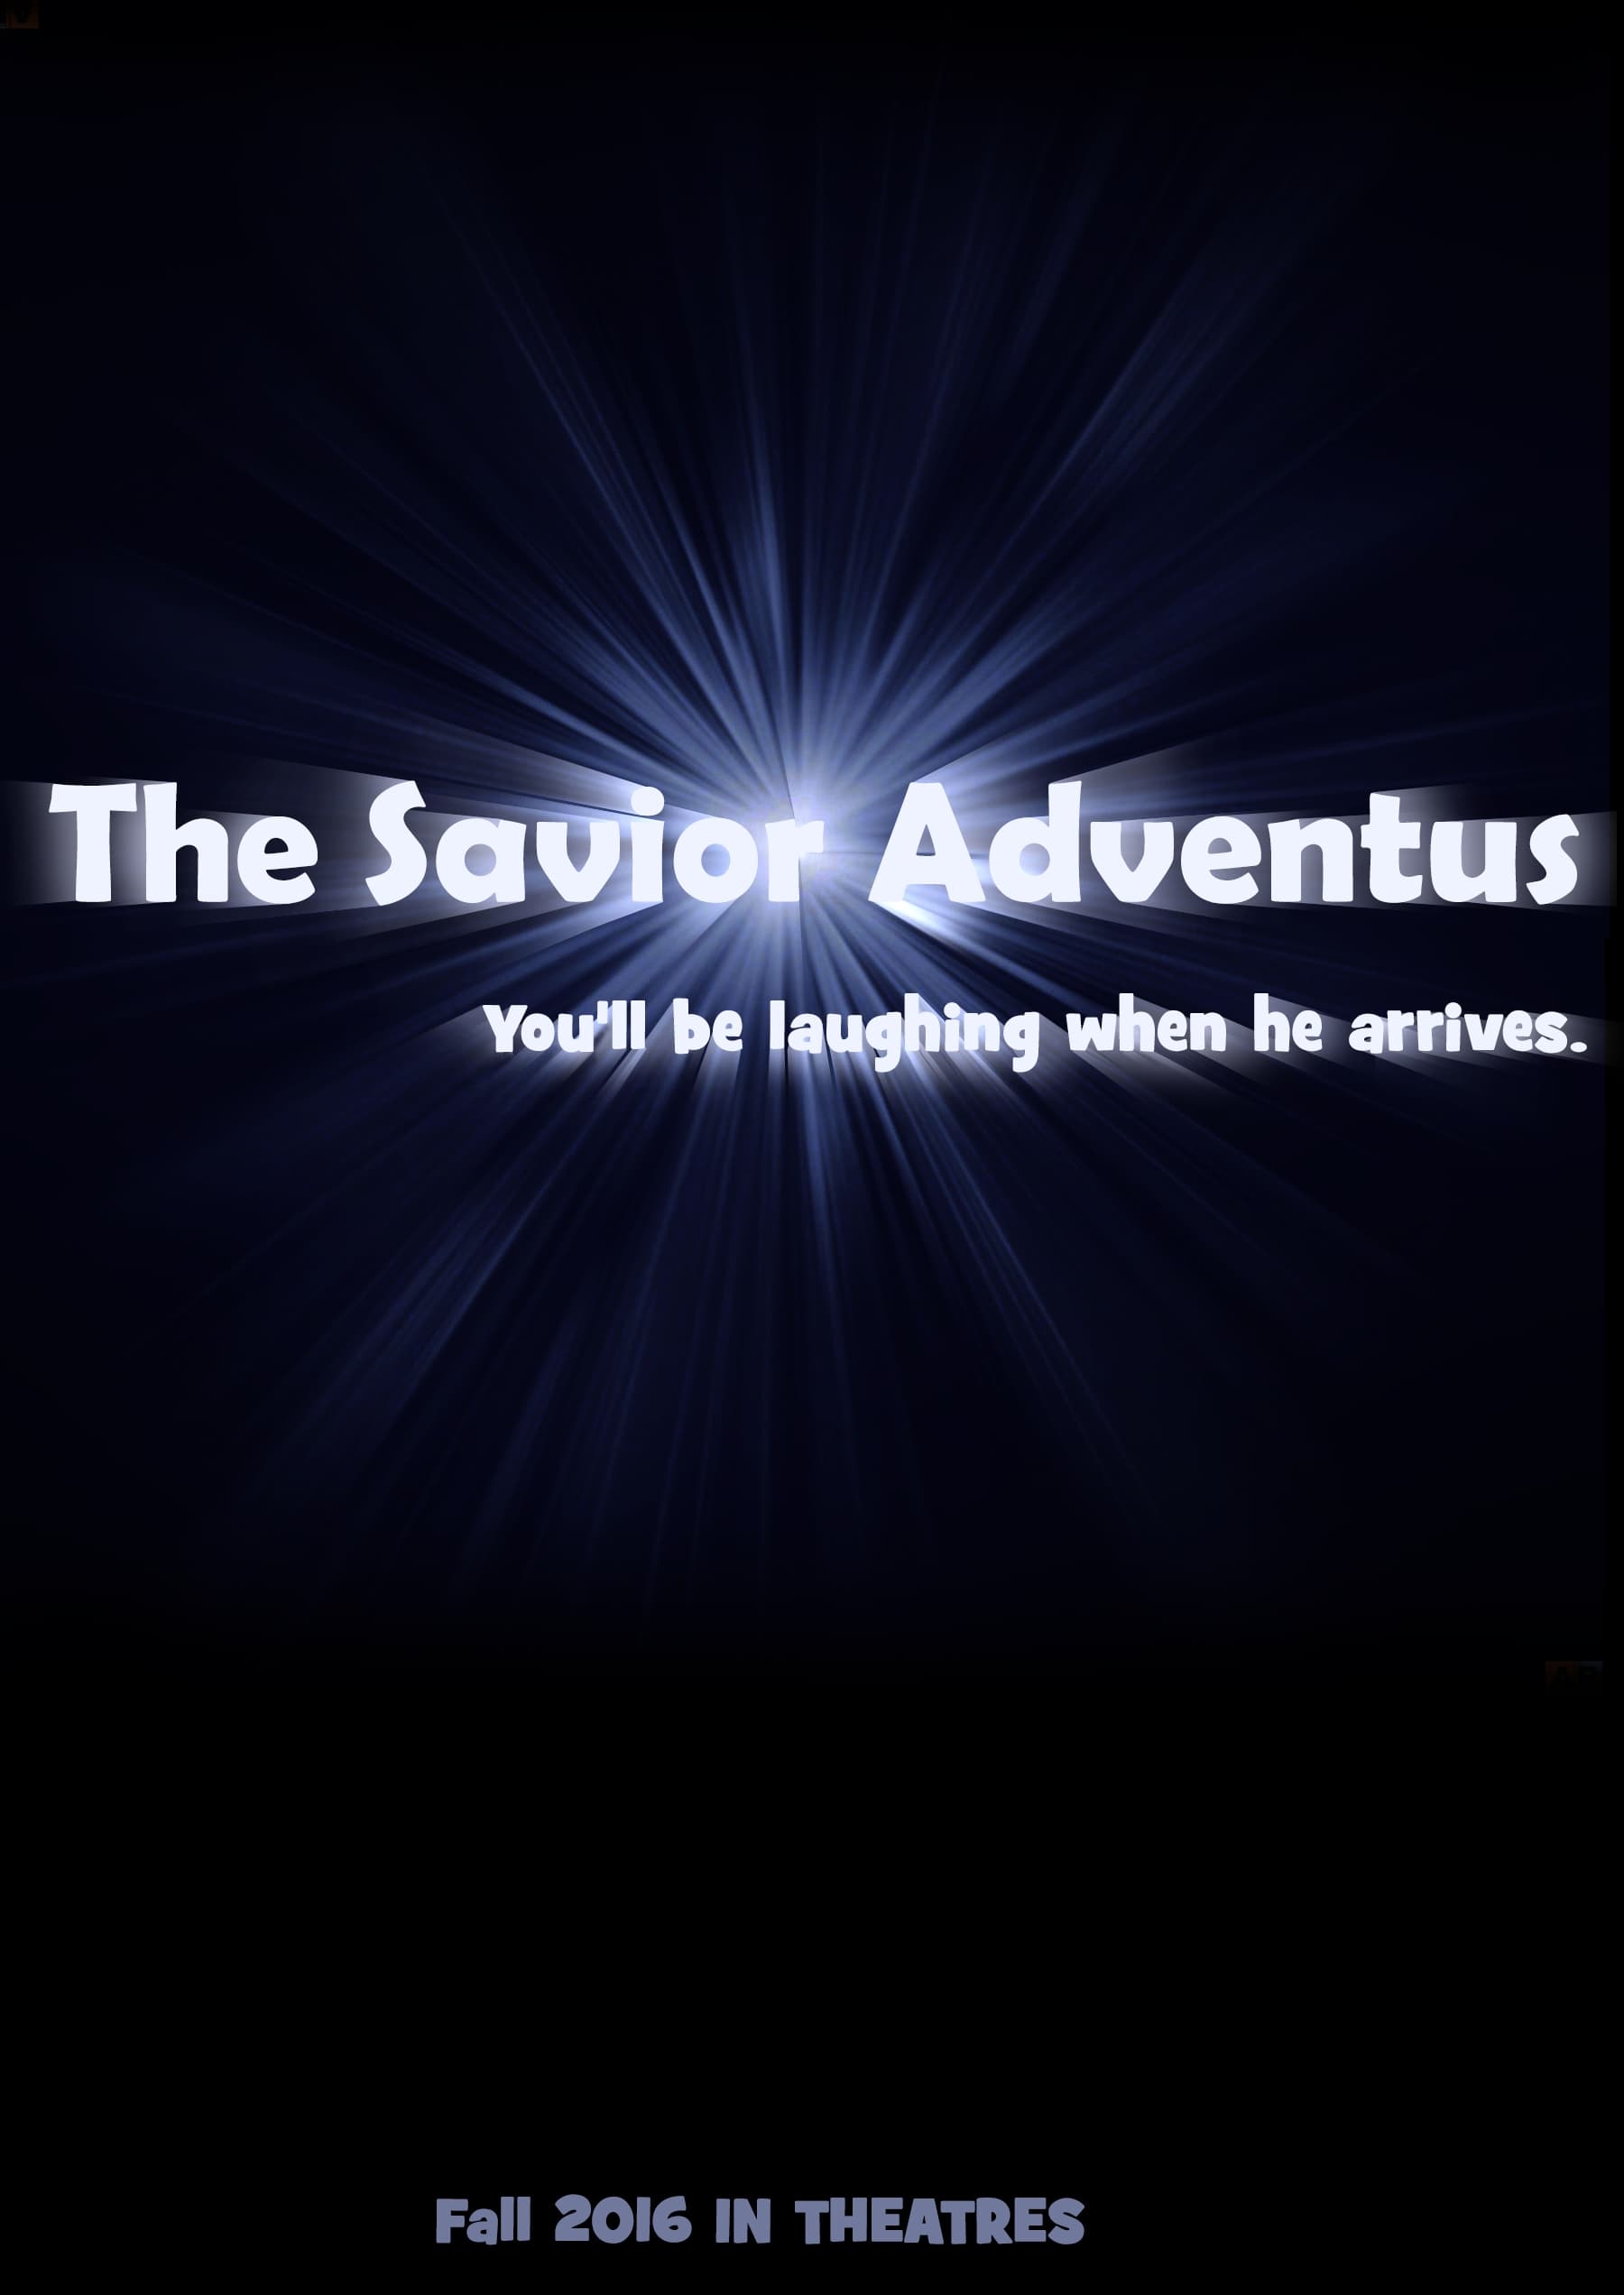 The Savior: Adventus